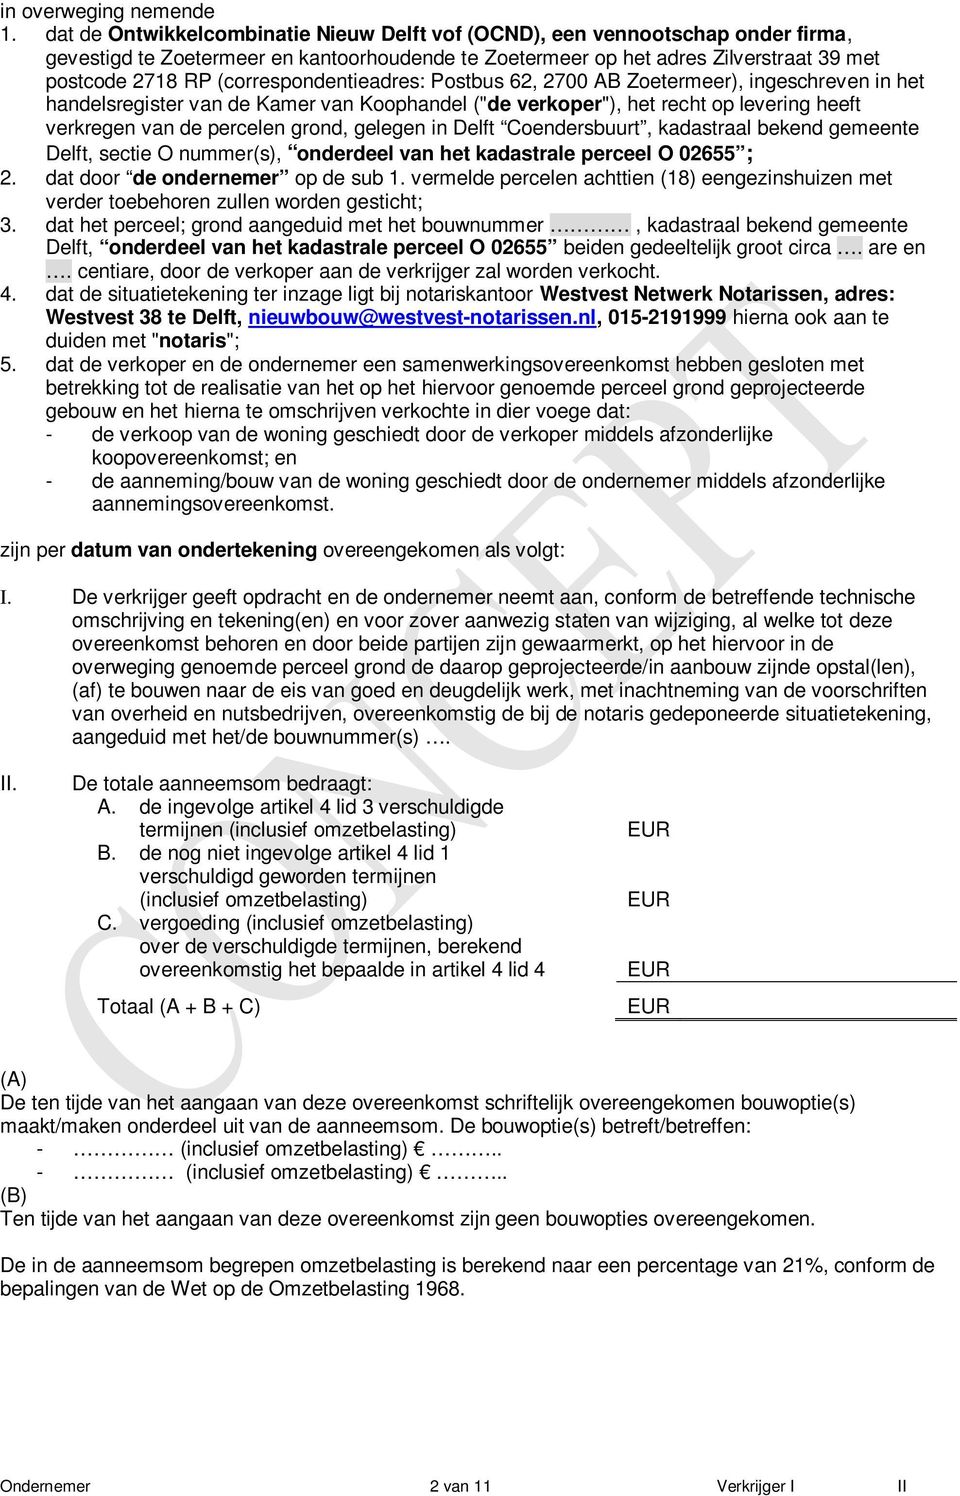 (correspondentieadres: Postbus 62, 2700 AB Zoetermeer), ingeschreven in het handelsregister van de Kamer van Kohandel ("de verker"), het recht levering heeft verkregen van de percelen grond, gelegen